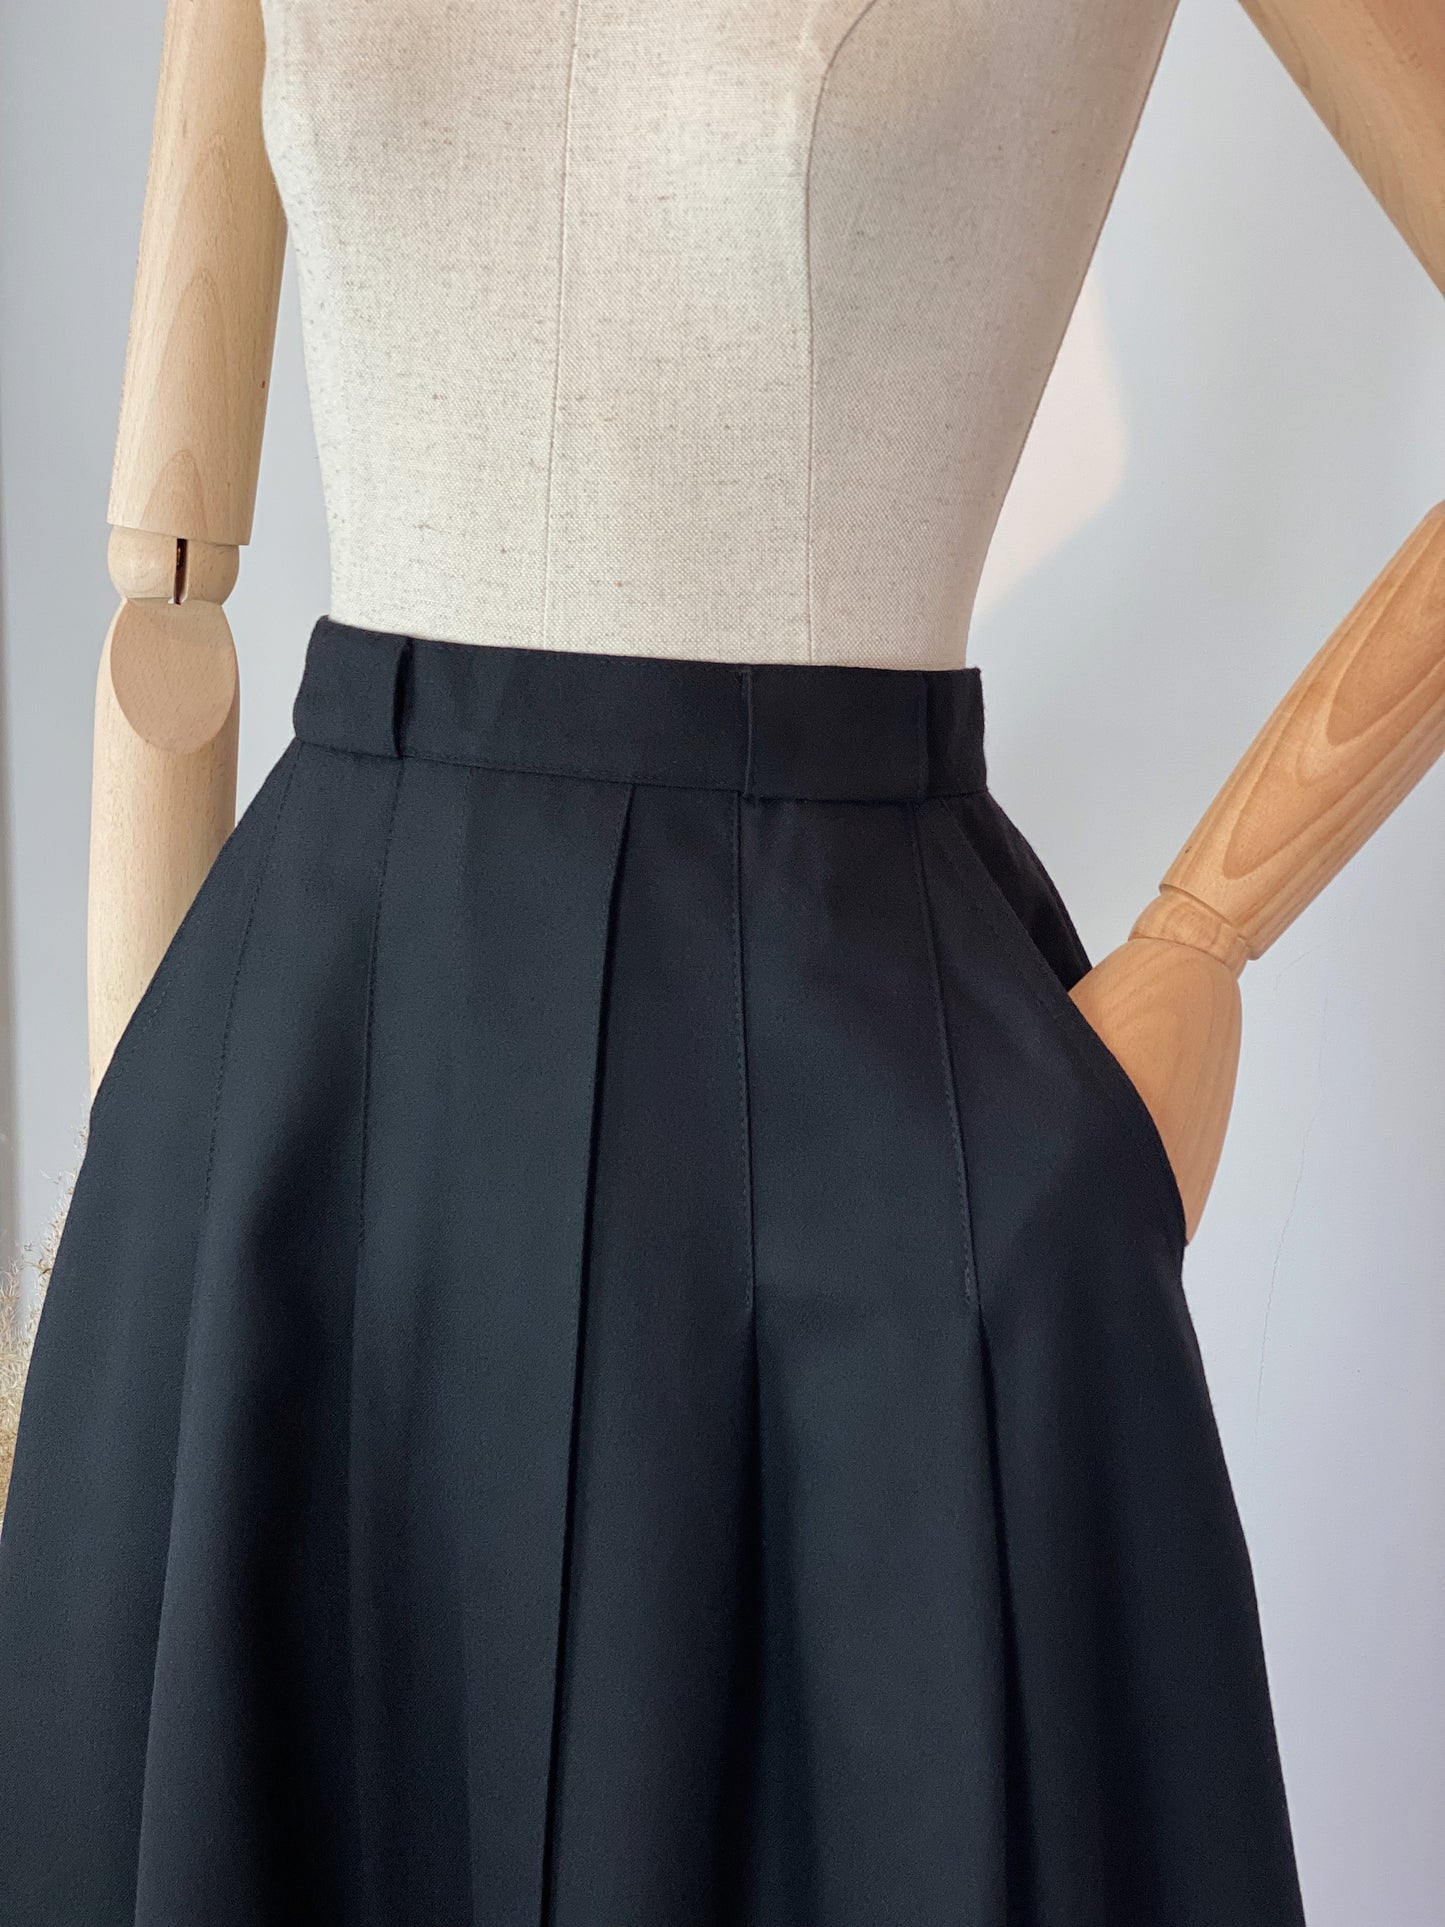 Vintage Black Woollen Skirt